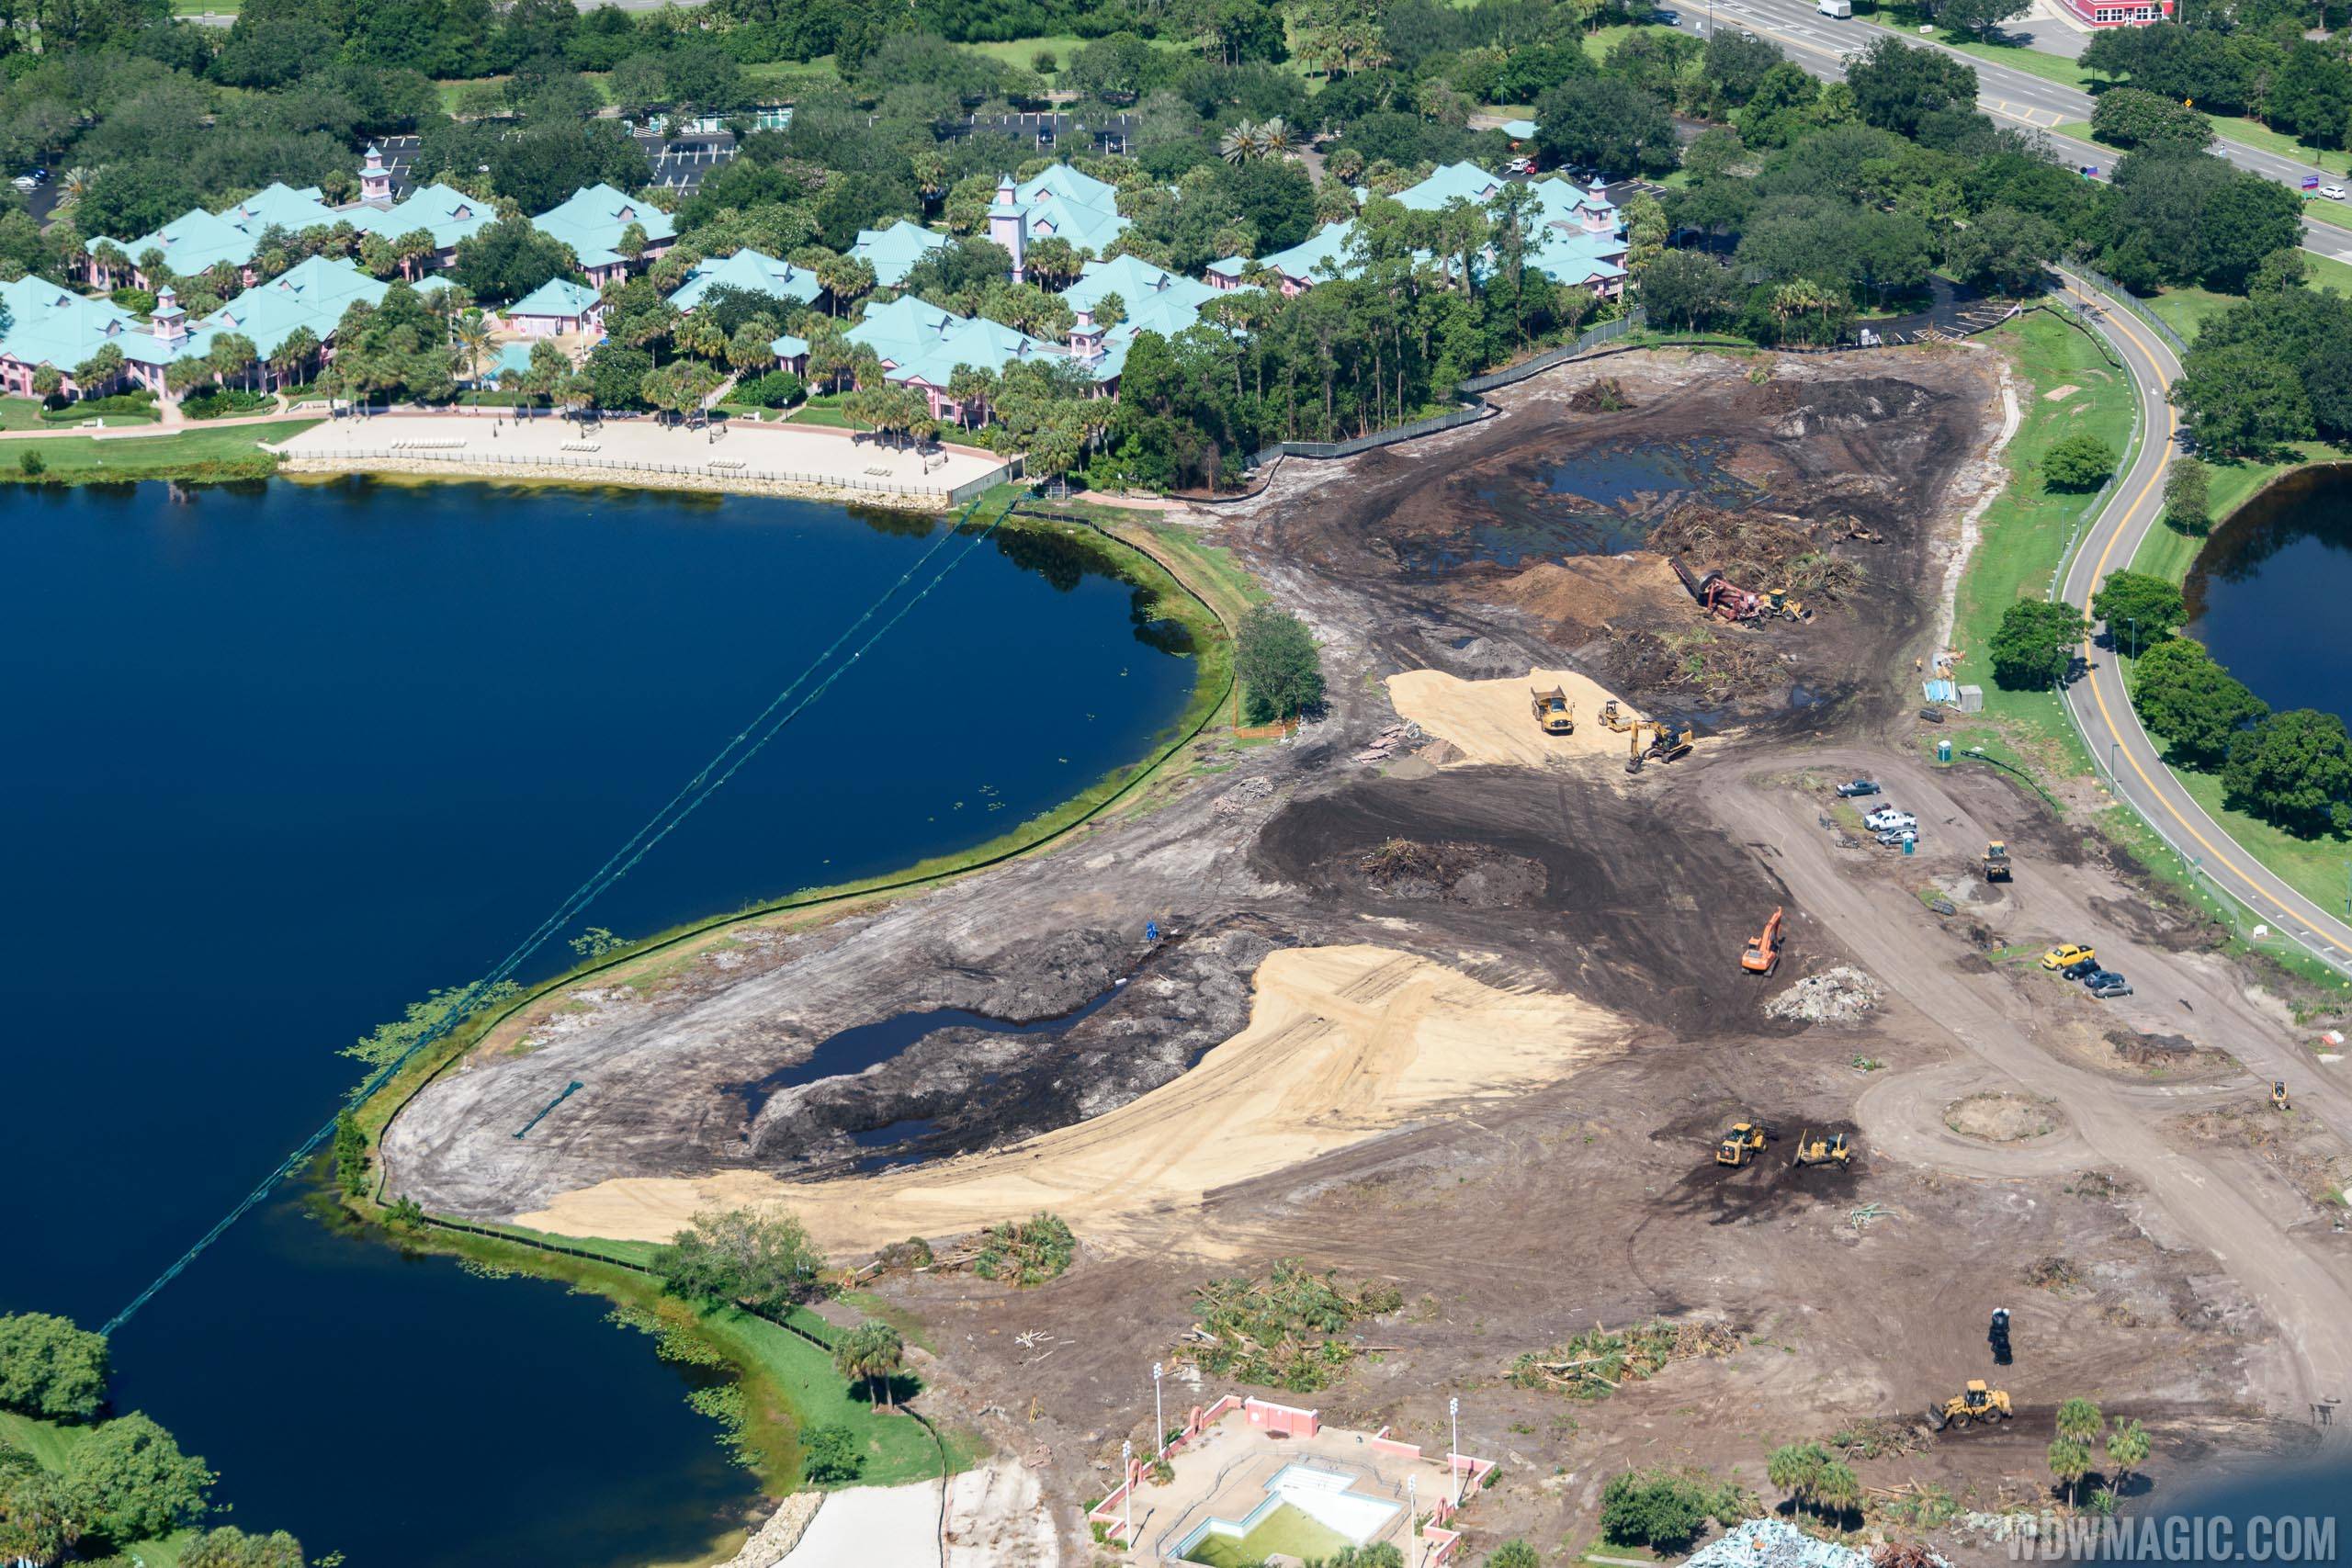 PHOTOS - Barbados and Martinique demolition underway at Disney's Caribbean Beach Resort